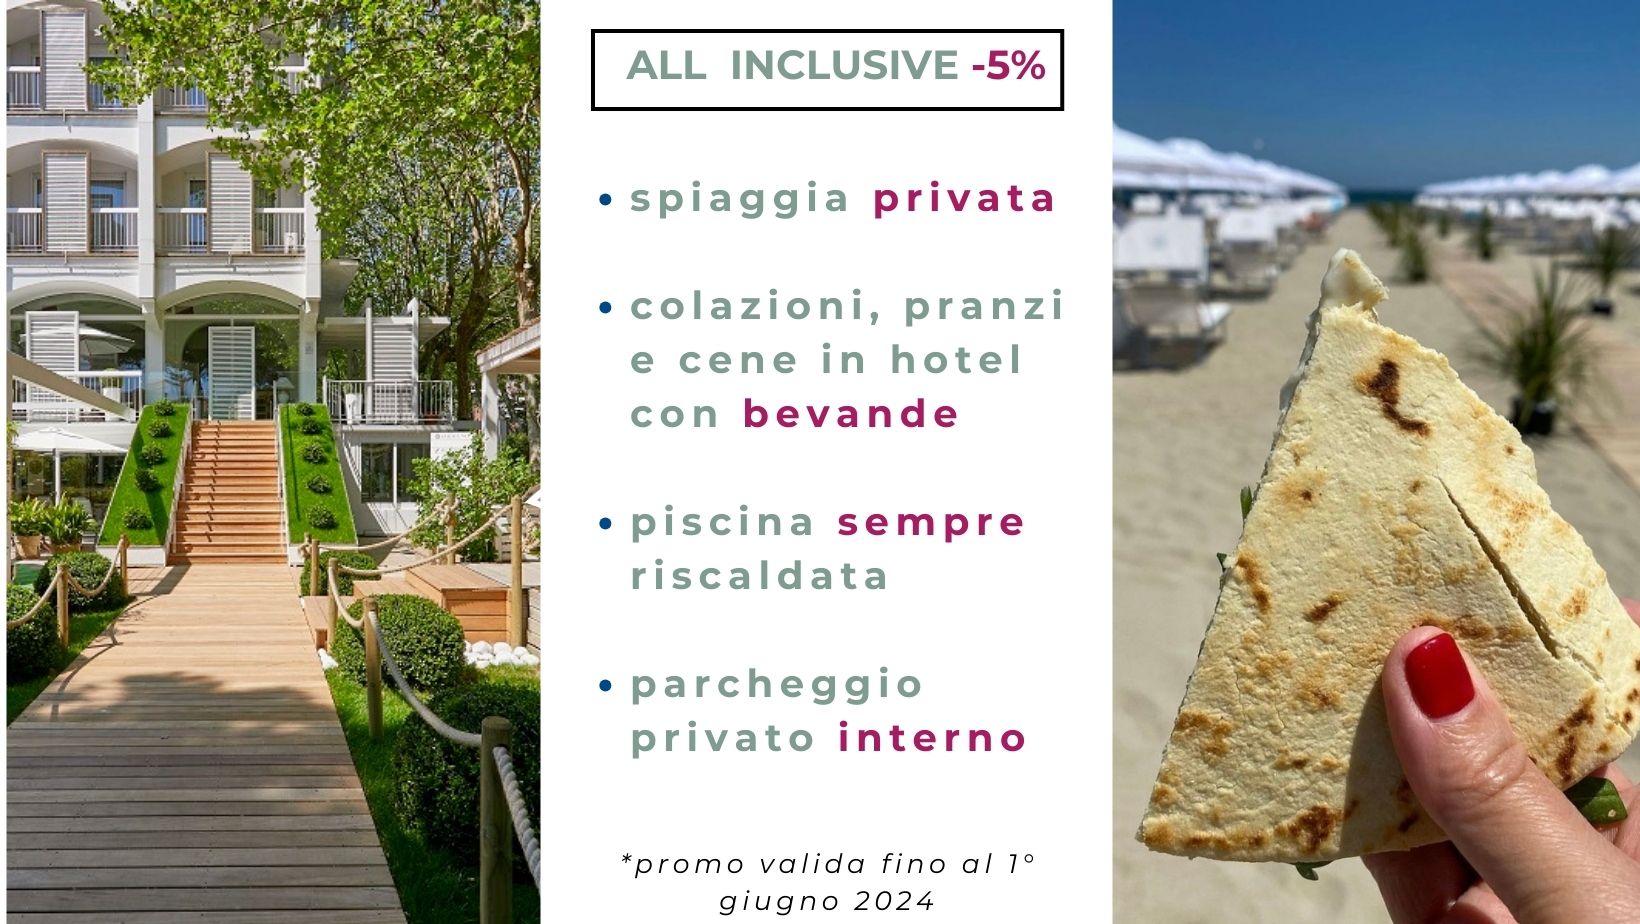 Saraceno hotel 4 stelle con ristorante, piscina sempre riscaldata, spiaggia con teli mare, parcheggio interno Milano Marittima Cerviain, Cervia